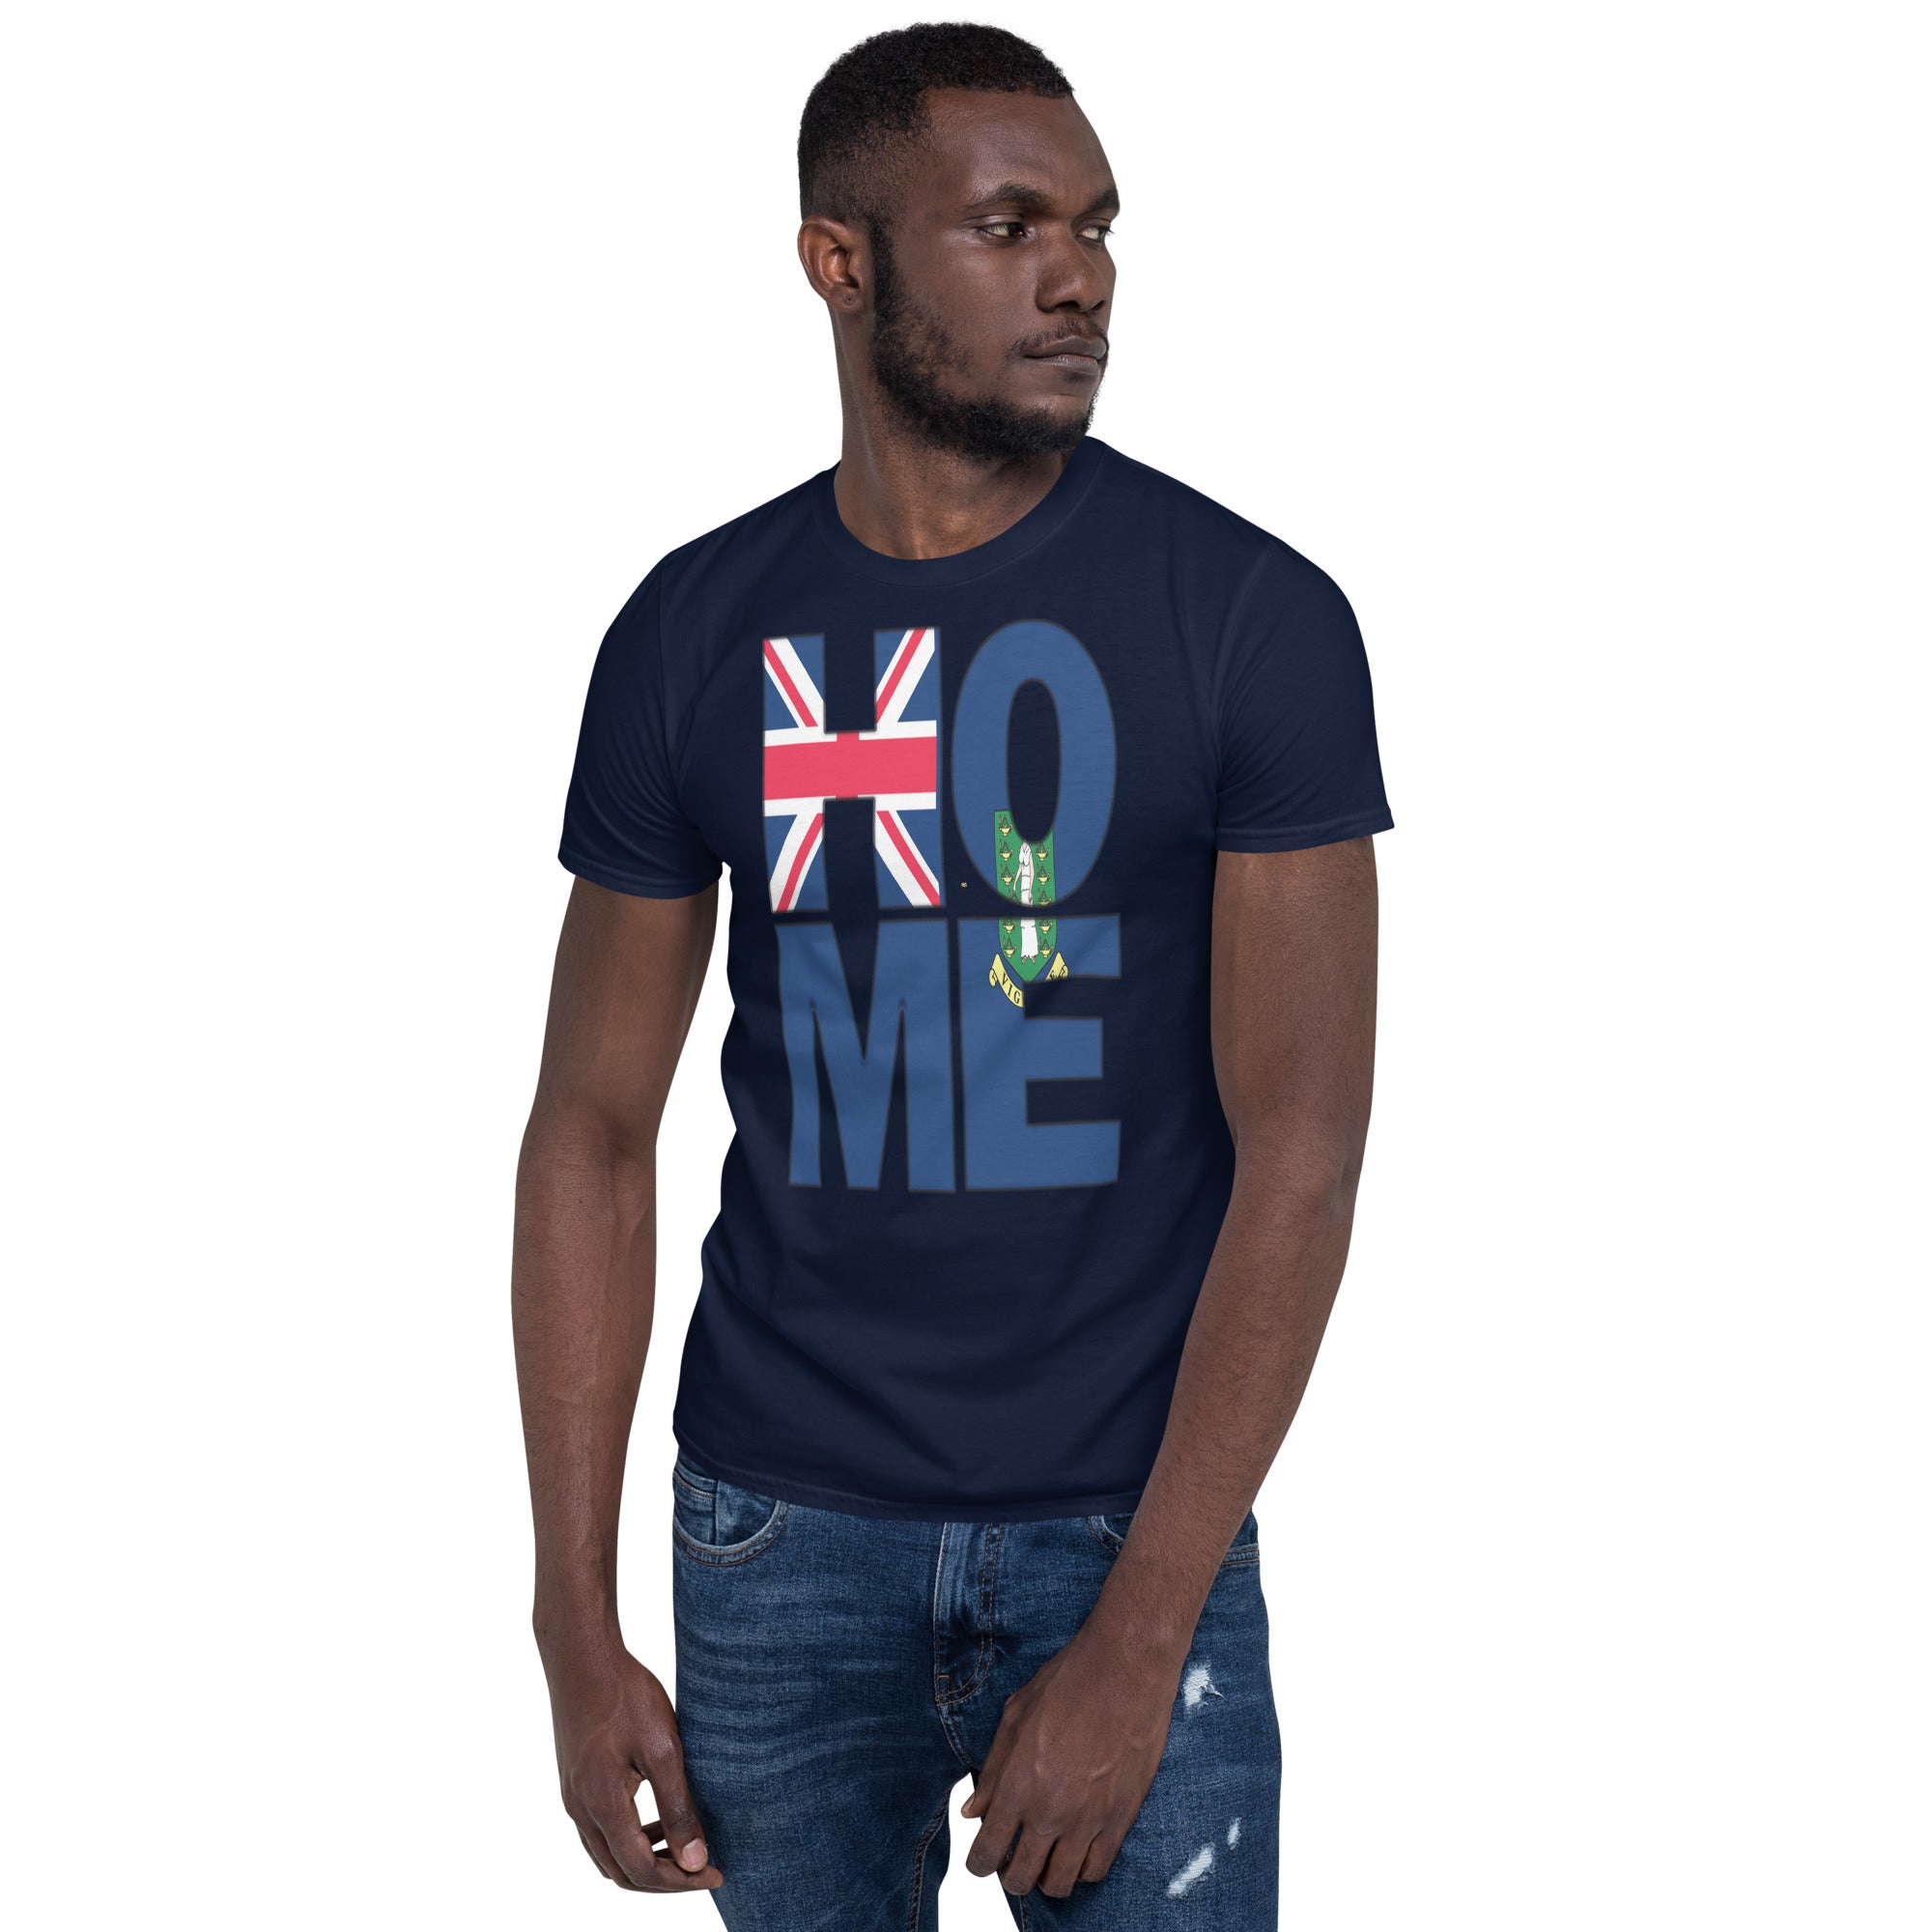 British Virgin Islands flag spelling HOME on black men wearing navy color shirt